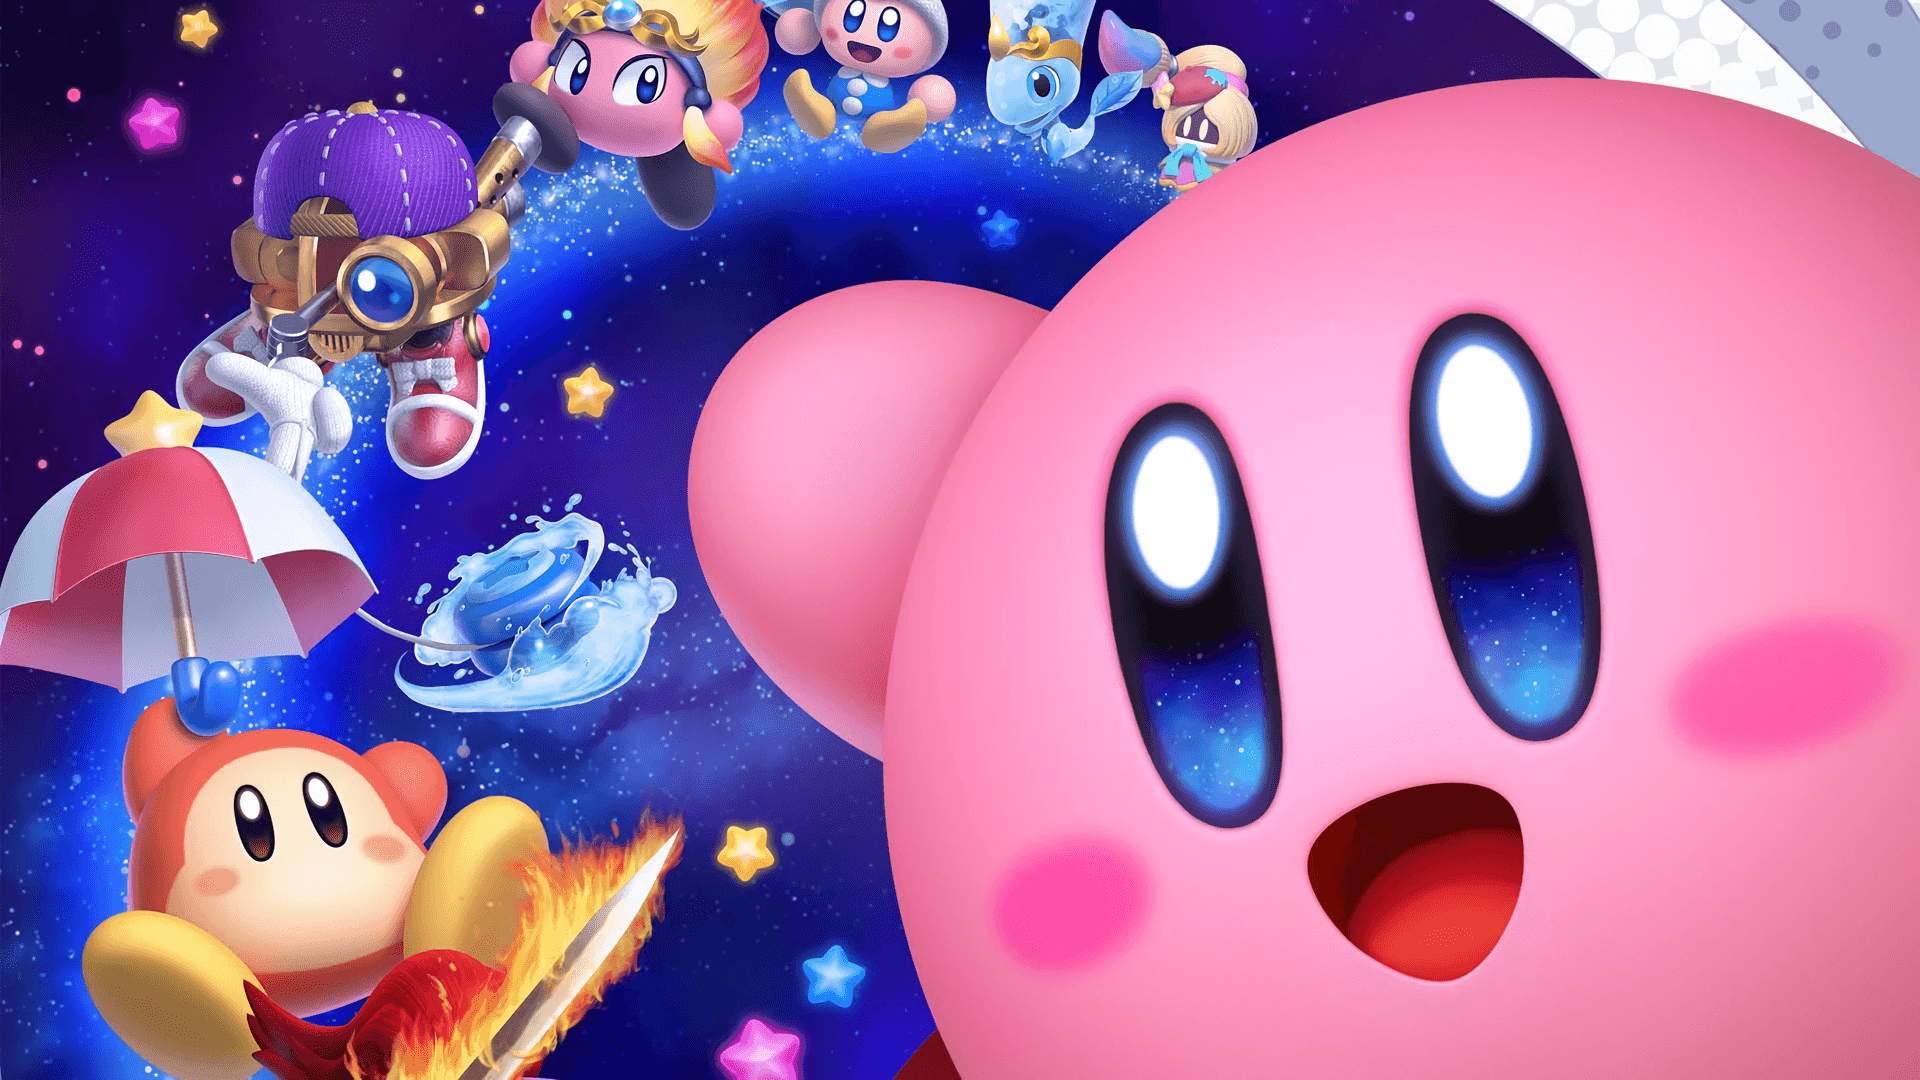 Đủ kiểu dáng, đủ màu sắc và đủ độ phân giải cao, bộ sưu tập hình nền Kirby HD sẽ đem đến cho bạn những trải nghiệm rực rỡ khó quên. Hãy cùng khám phá và tải xuống nào!